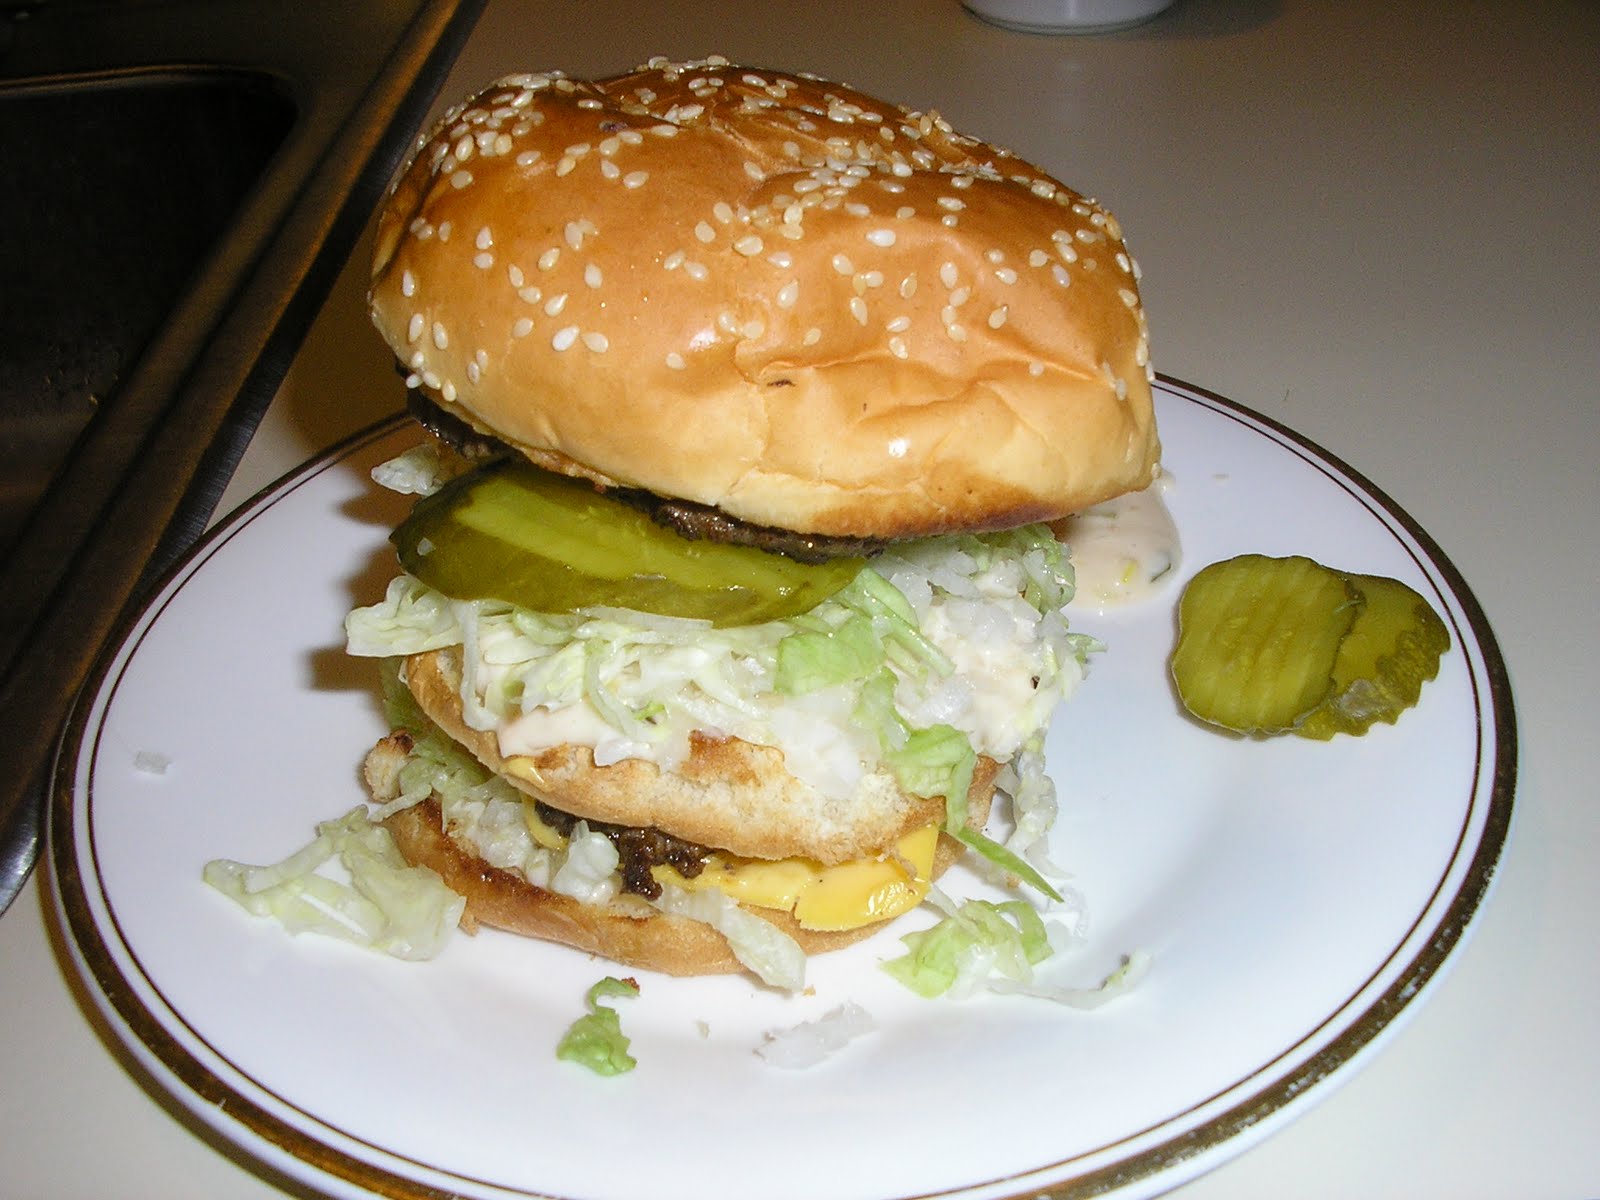 Big Big Mac - Fatback and Foie Gras: Homemade Big Macs Make for Great Food ...